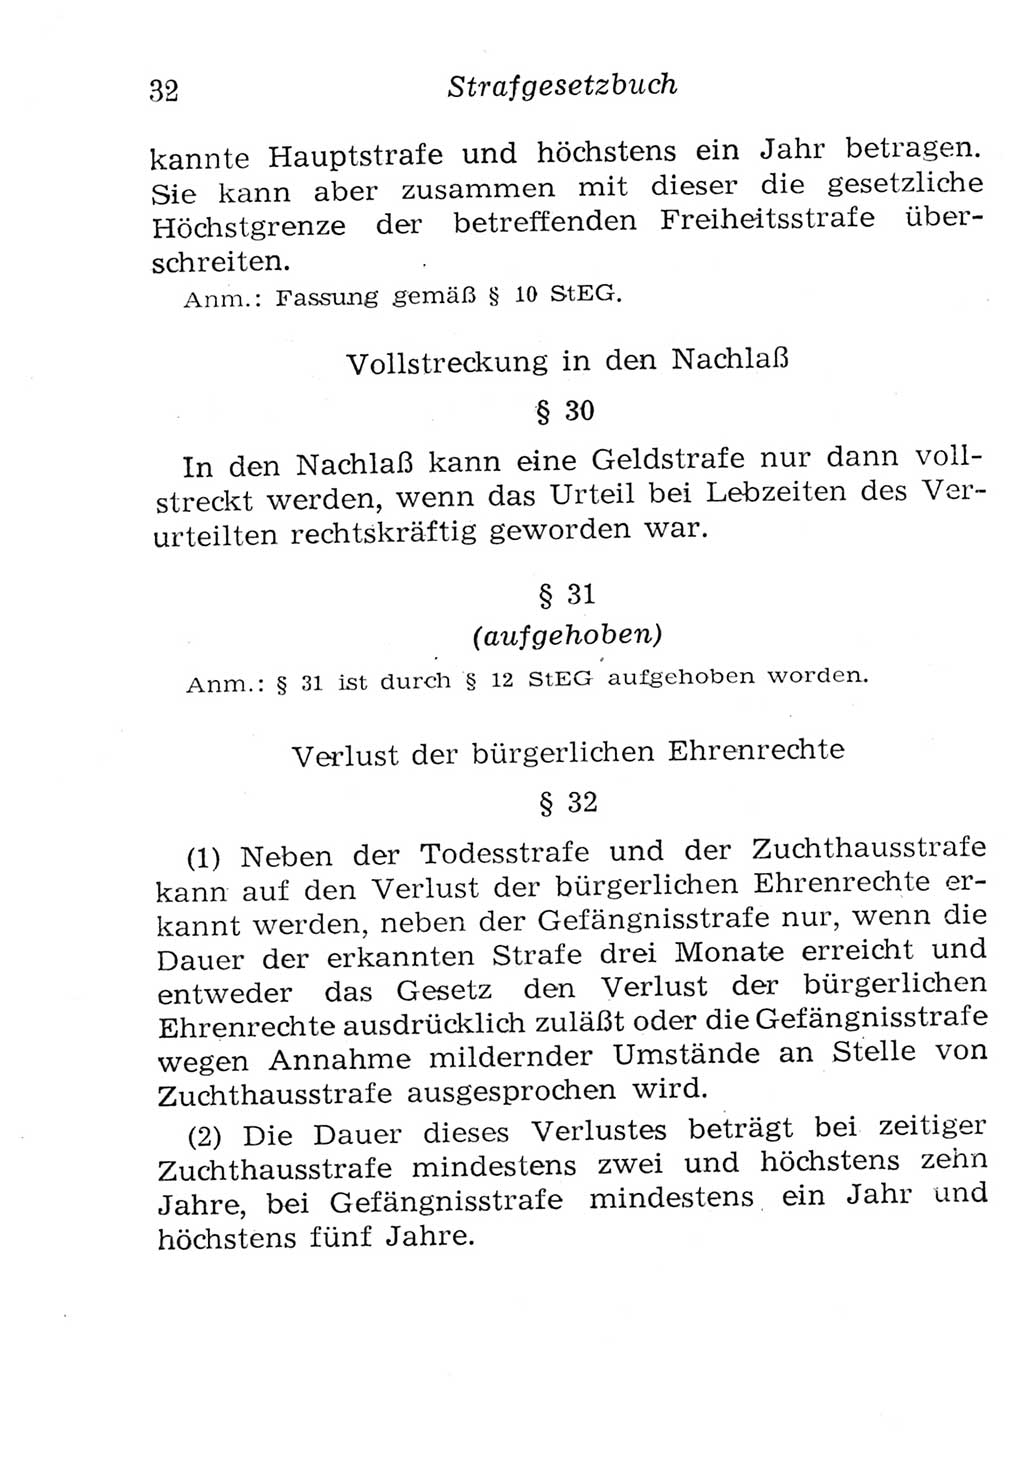 Strafgesetzbuch (StGB) und andere Strafgesetze [Deutsche Demokratische Republik (DDR)] 1957, Seite 32 (StGB Strafges. DDR 1957, S. 32)